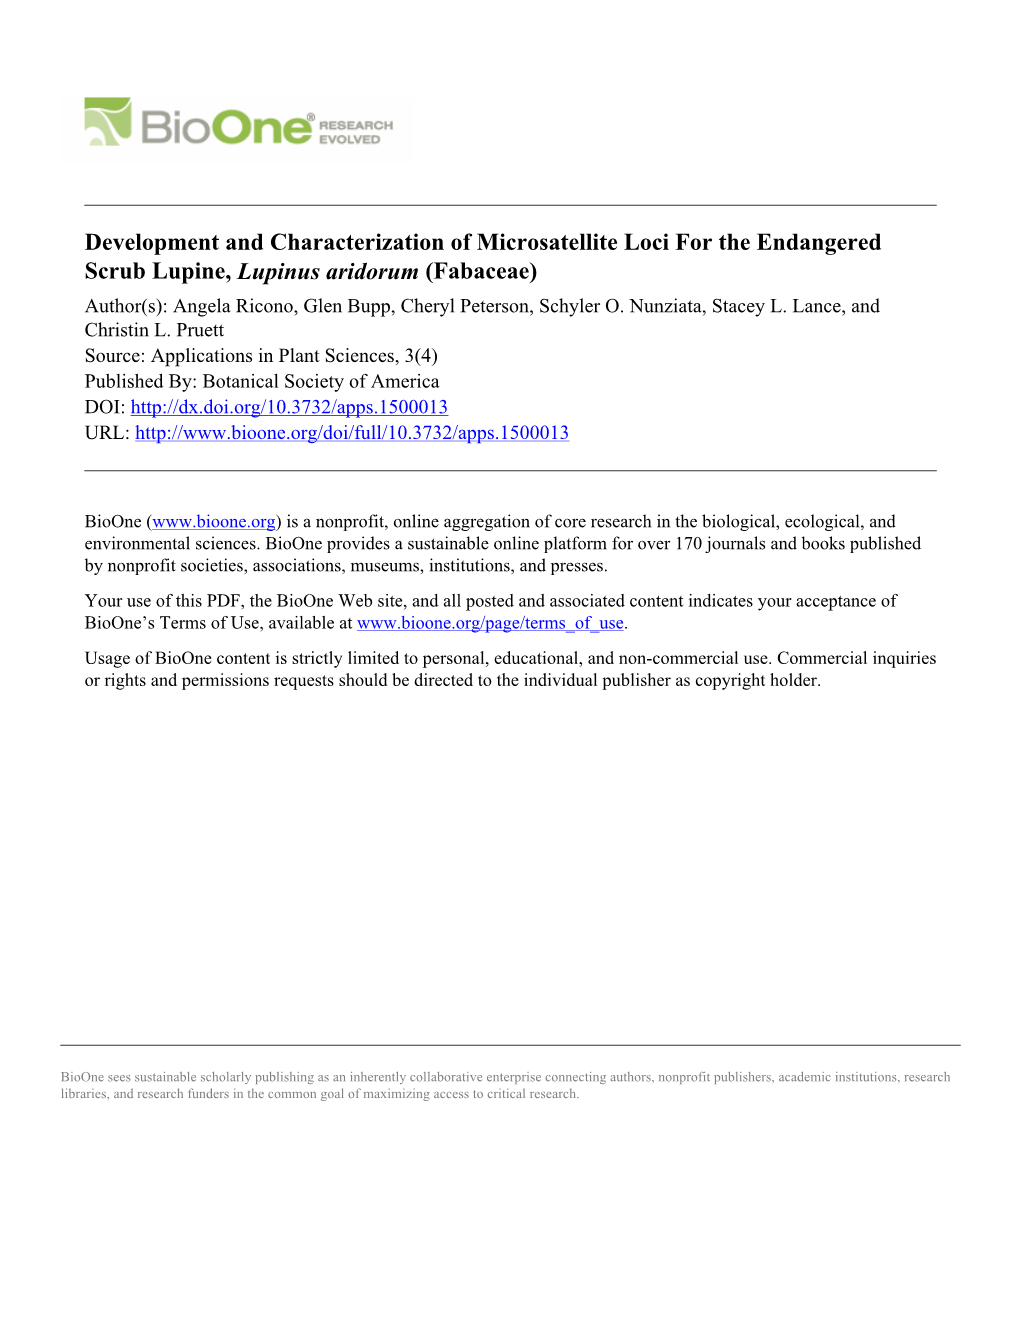 Development and Characterization of Microsatellite